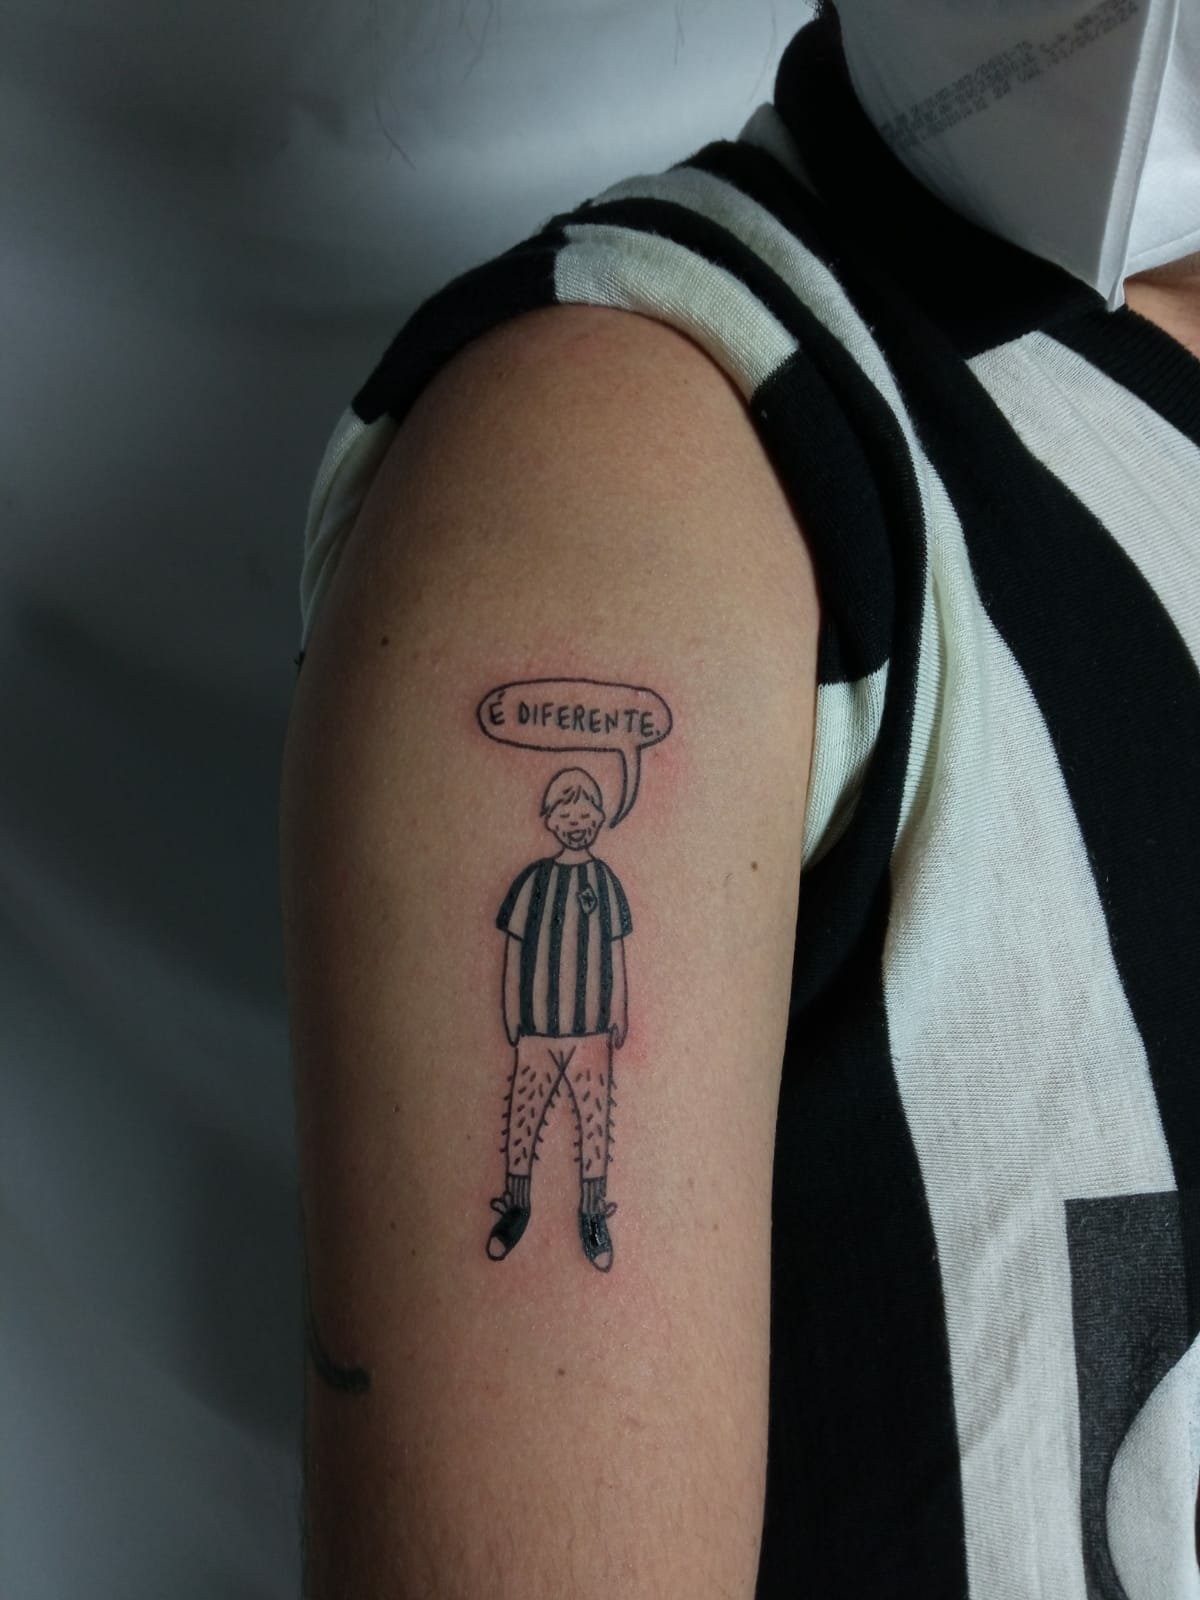 Manequinho, mascote do Botafogo, ganha versão trans em tatuagem de torcedor (Foto: Reprodução/Twitter)